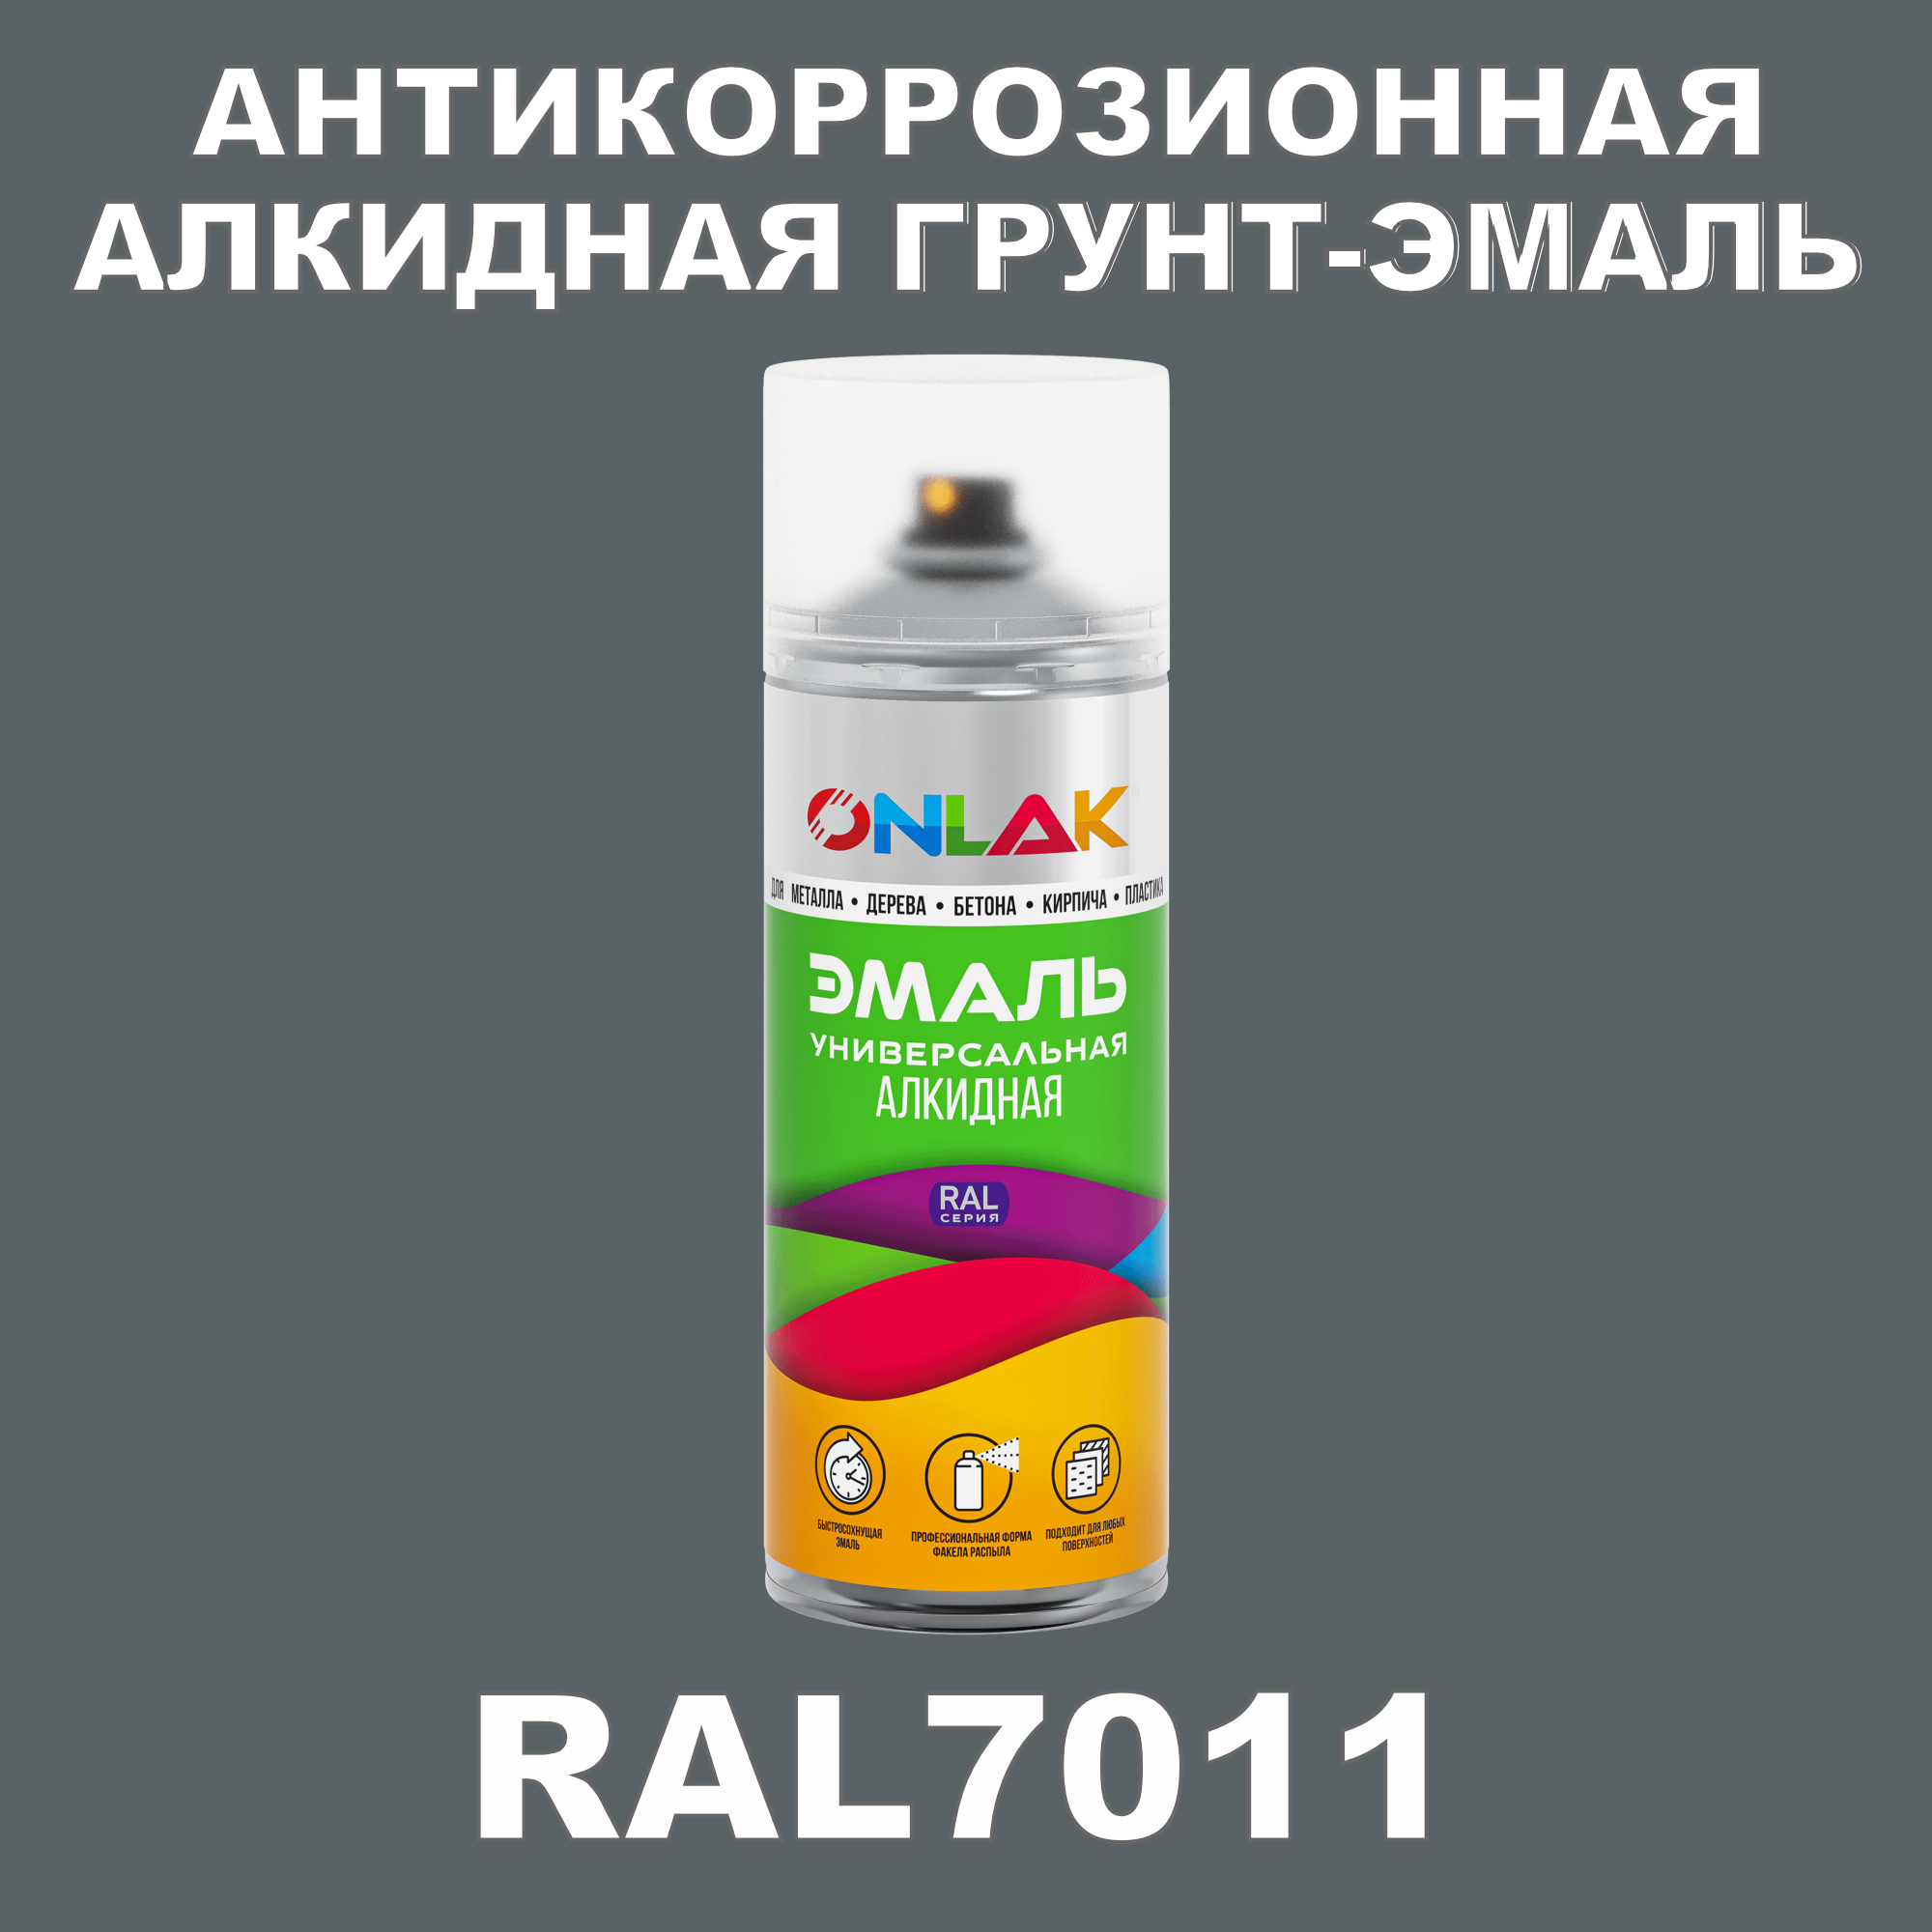 Антикоррозионная грунт-эмаль ONLAK RAL7011 полуматовая для металла и защиты от ржавчины